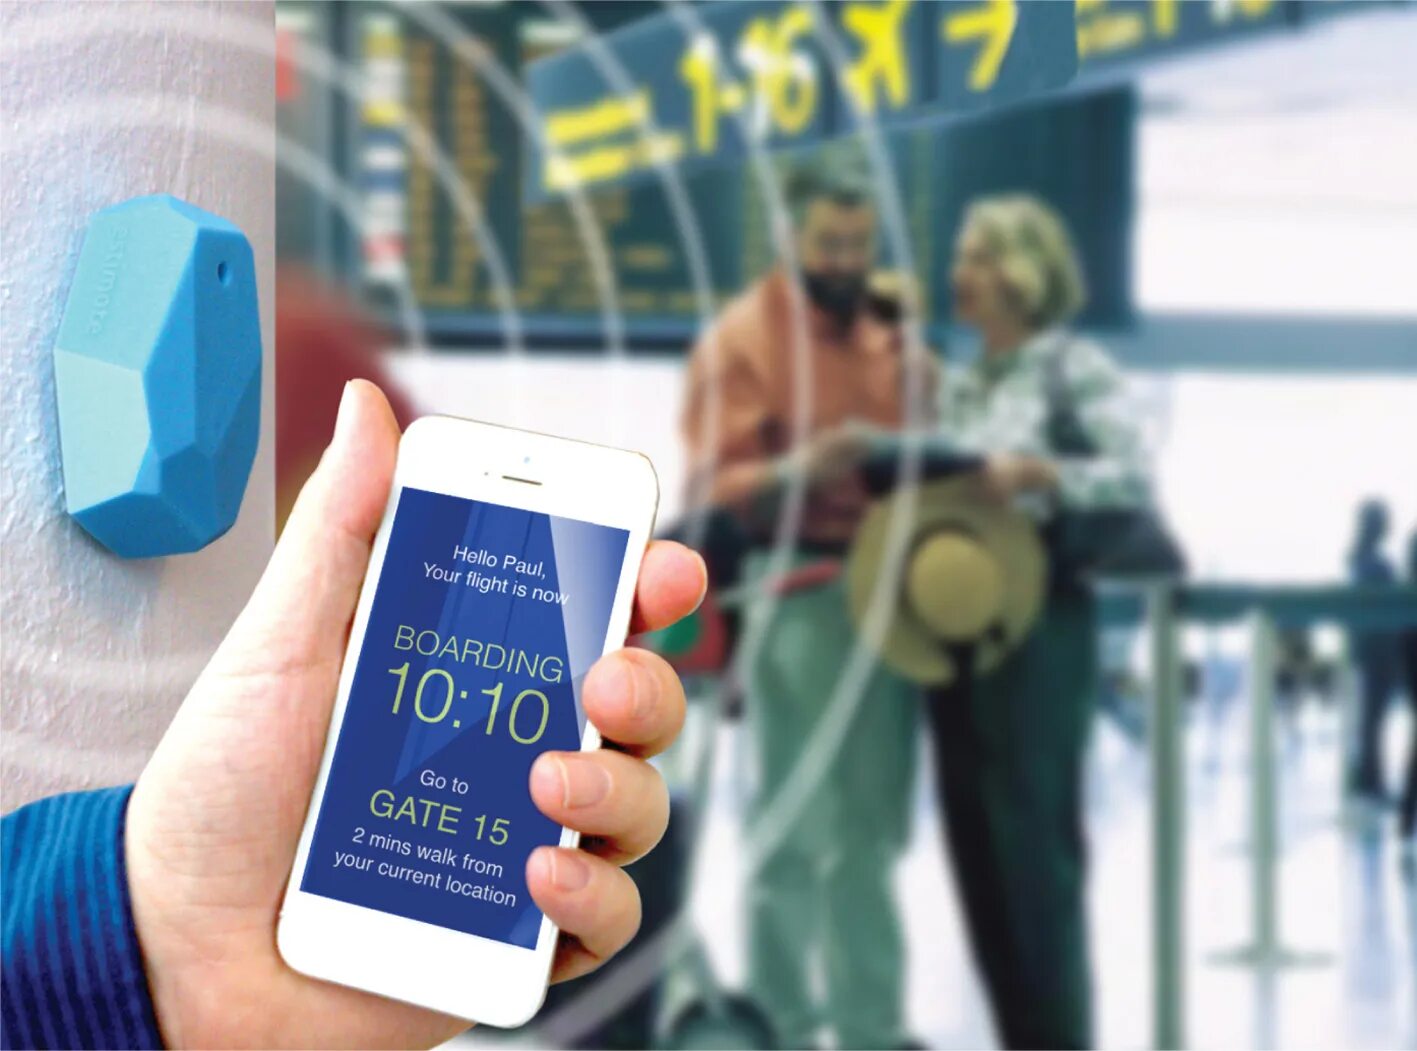 One new technologies. Информационные маячки. Информационные маячки в аэропорту. IBEACON маячки. Мобильное приложение аэропорта.